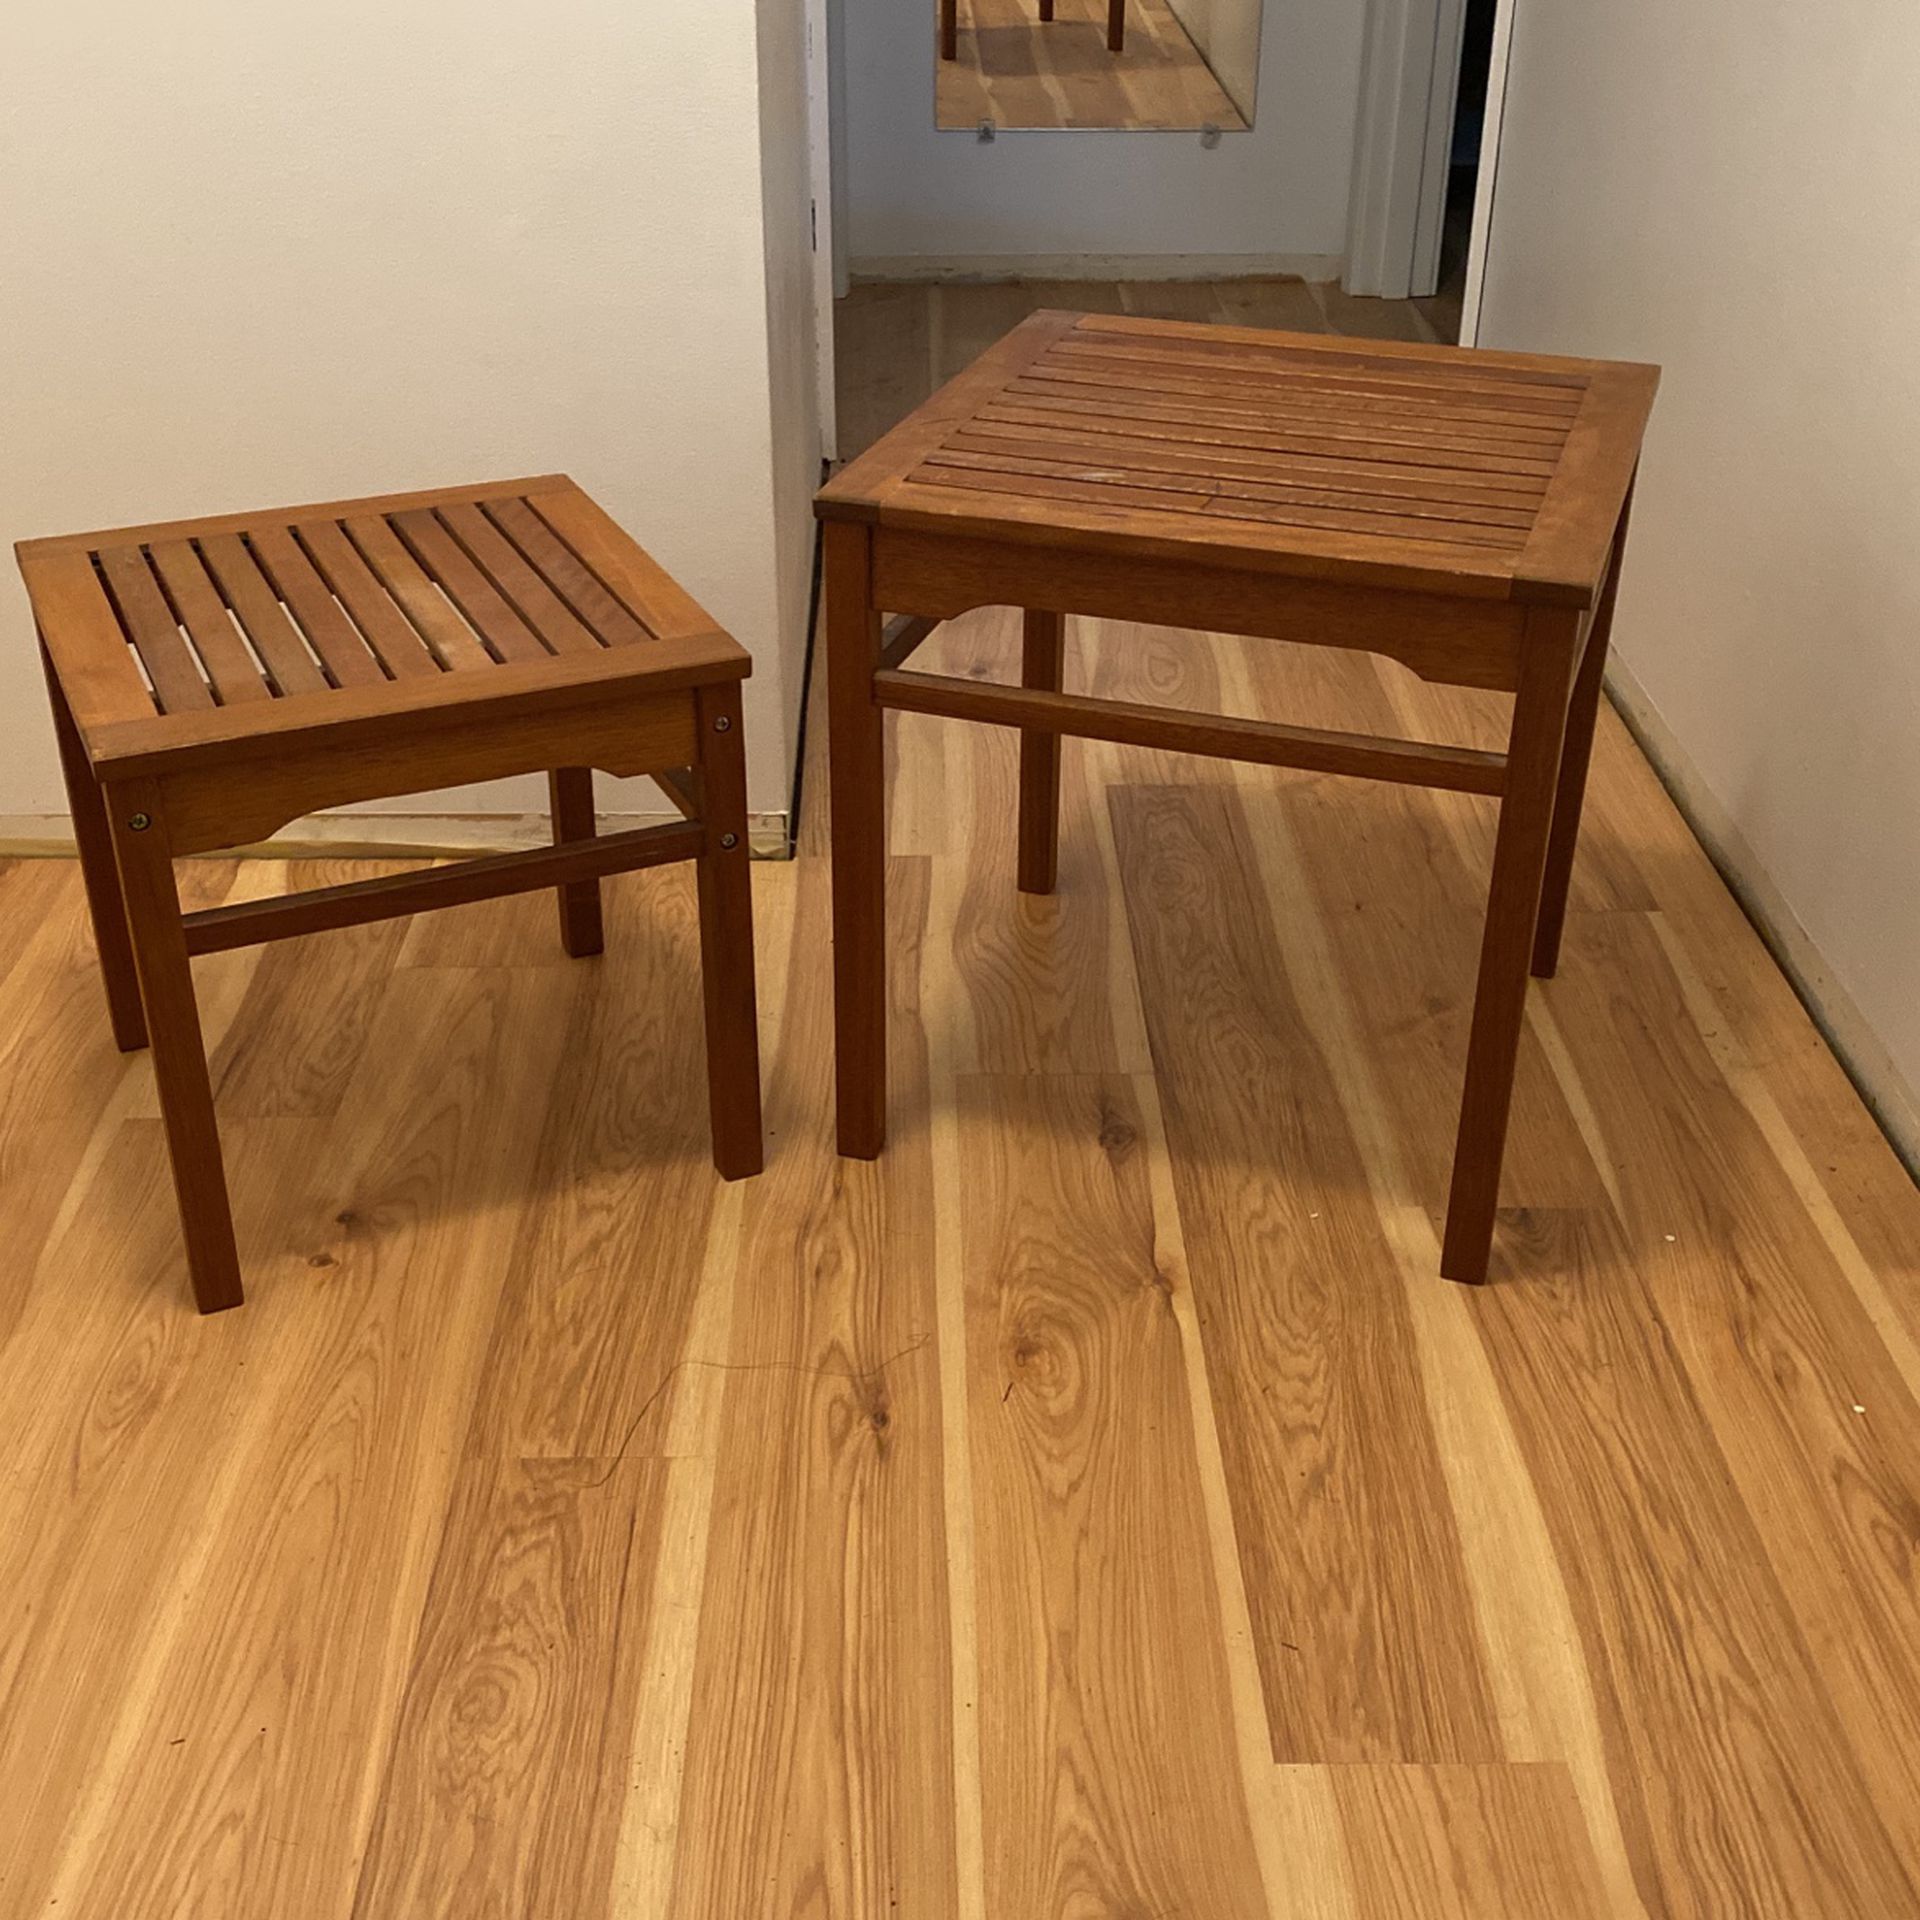 2 Cedar Tables